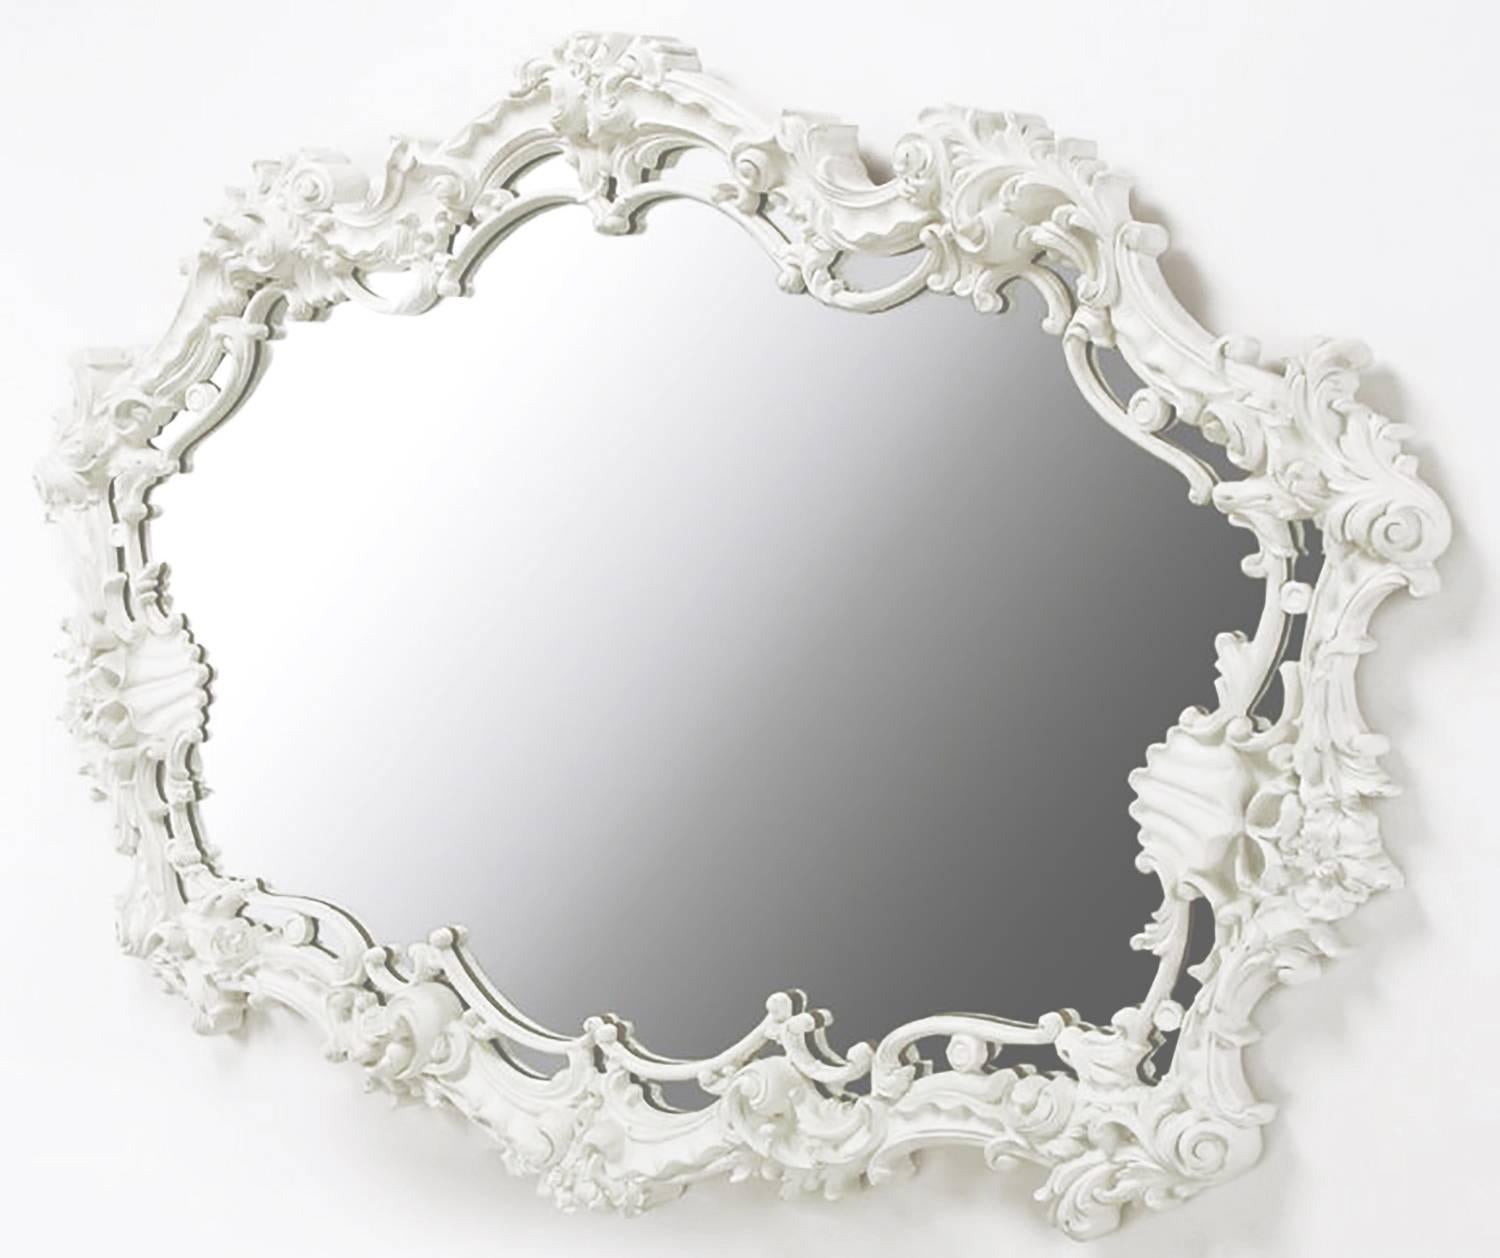 Extraordinaire miroir italien de style rococo en gesso moulé, laqué blanc, avec filigrane et détails de coquillages. Parfait pour une vanité, au-dessus d'une cheminée ou dans la chambre à coucher au-dessus d'une longue commode. Serge Roche et